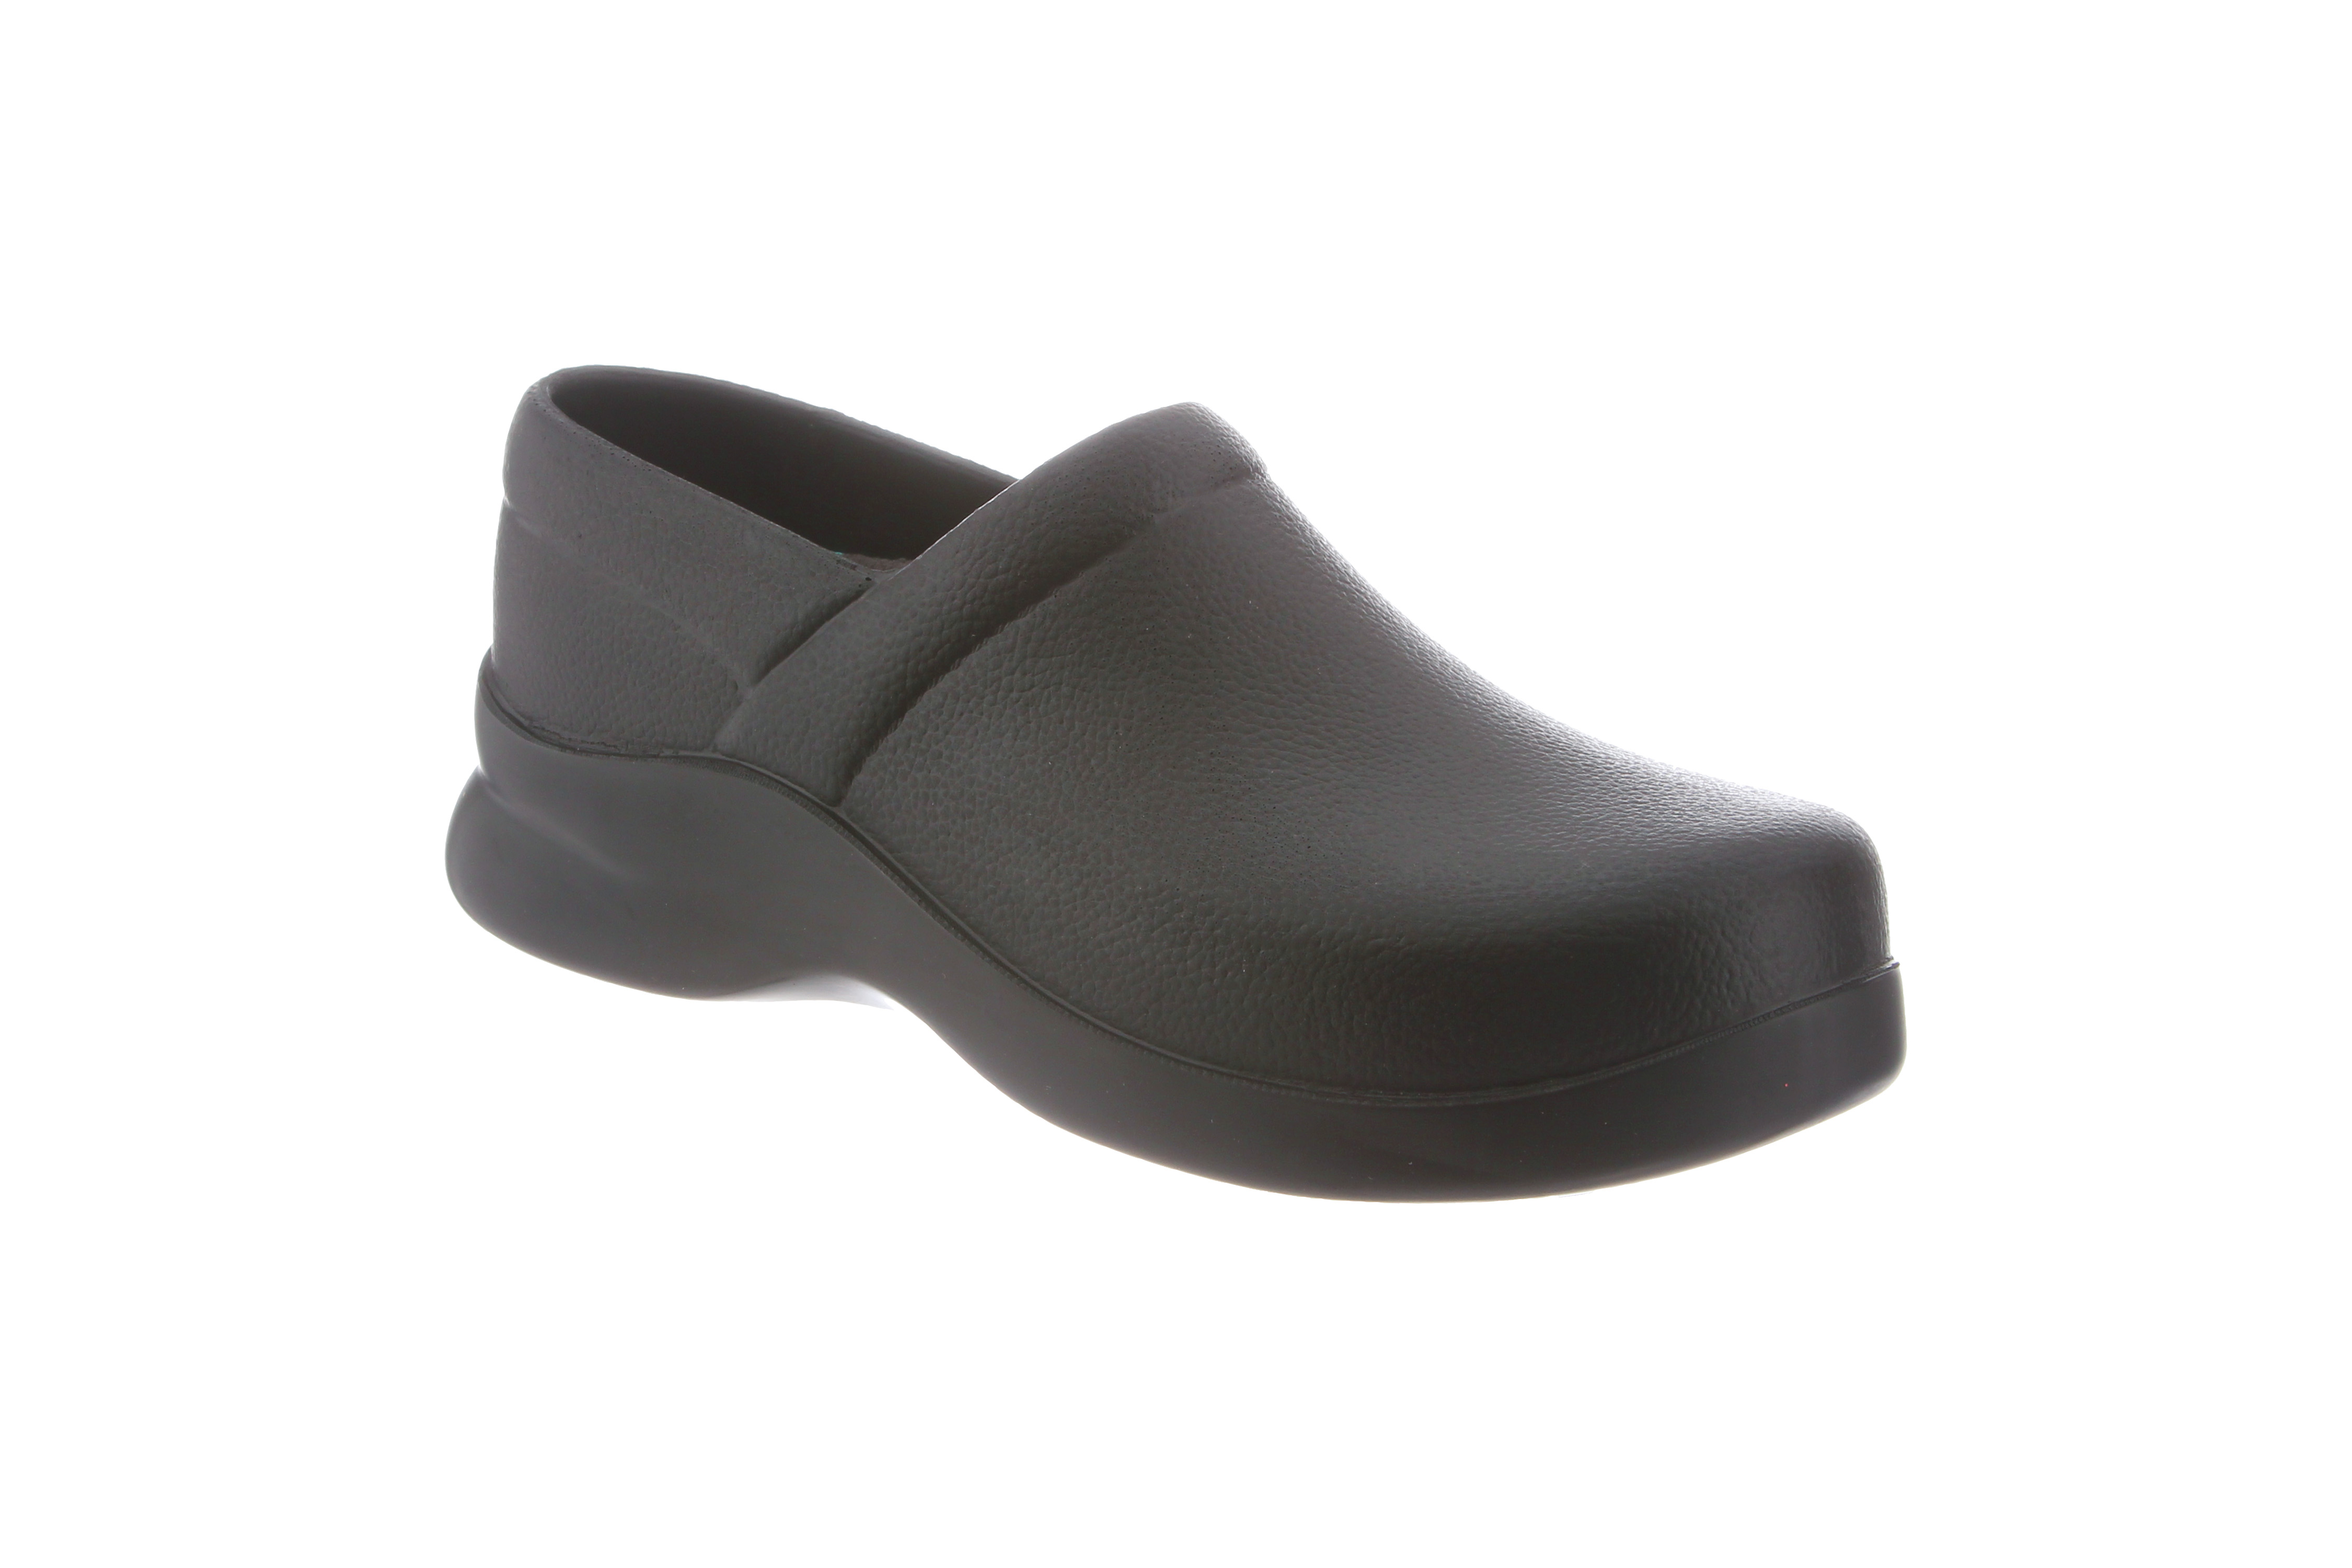 slip resistant polishable shoes